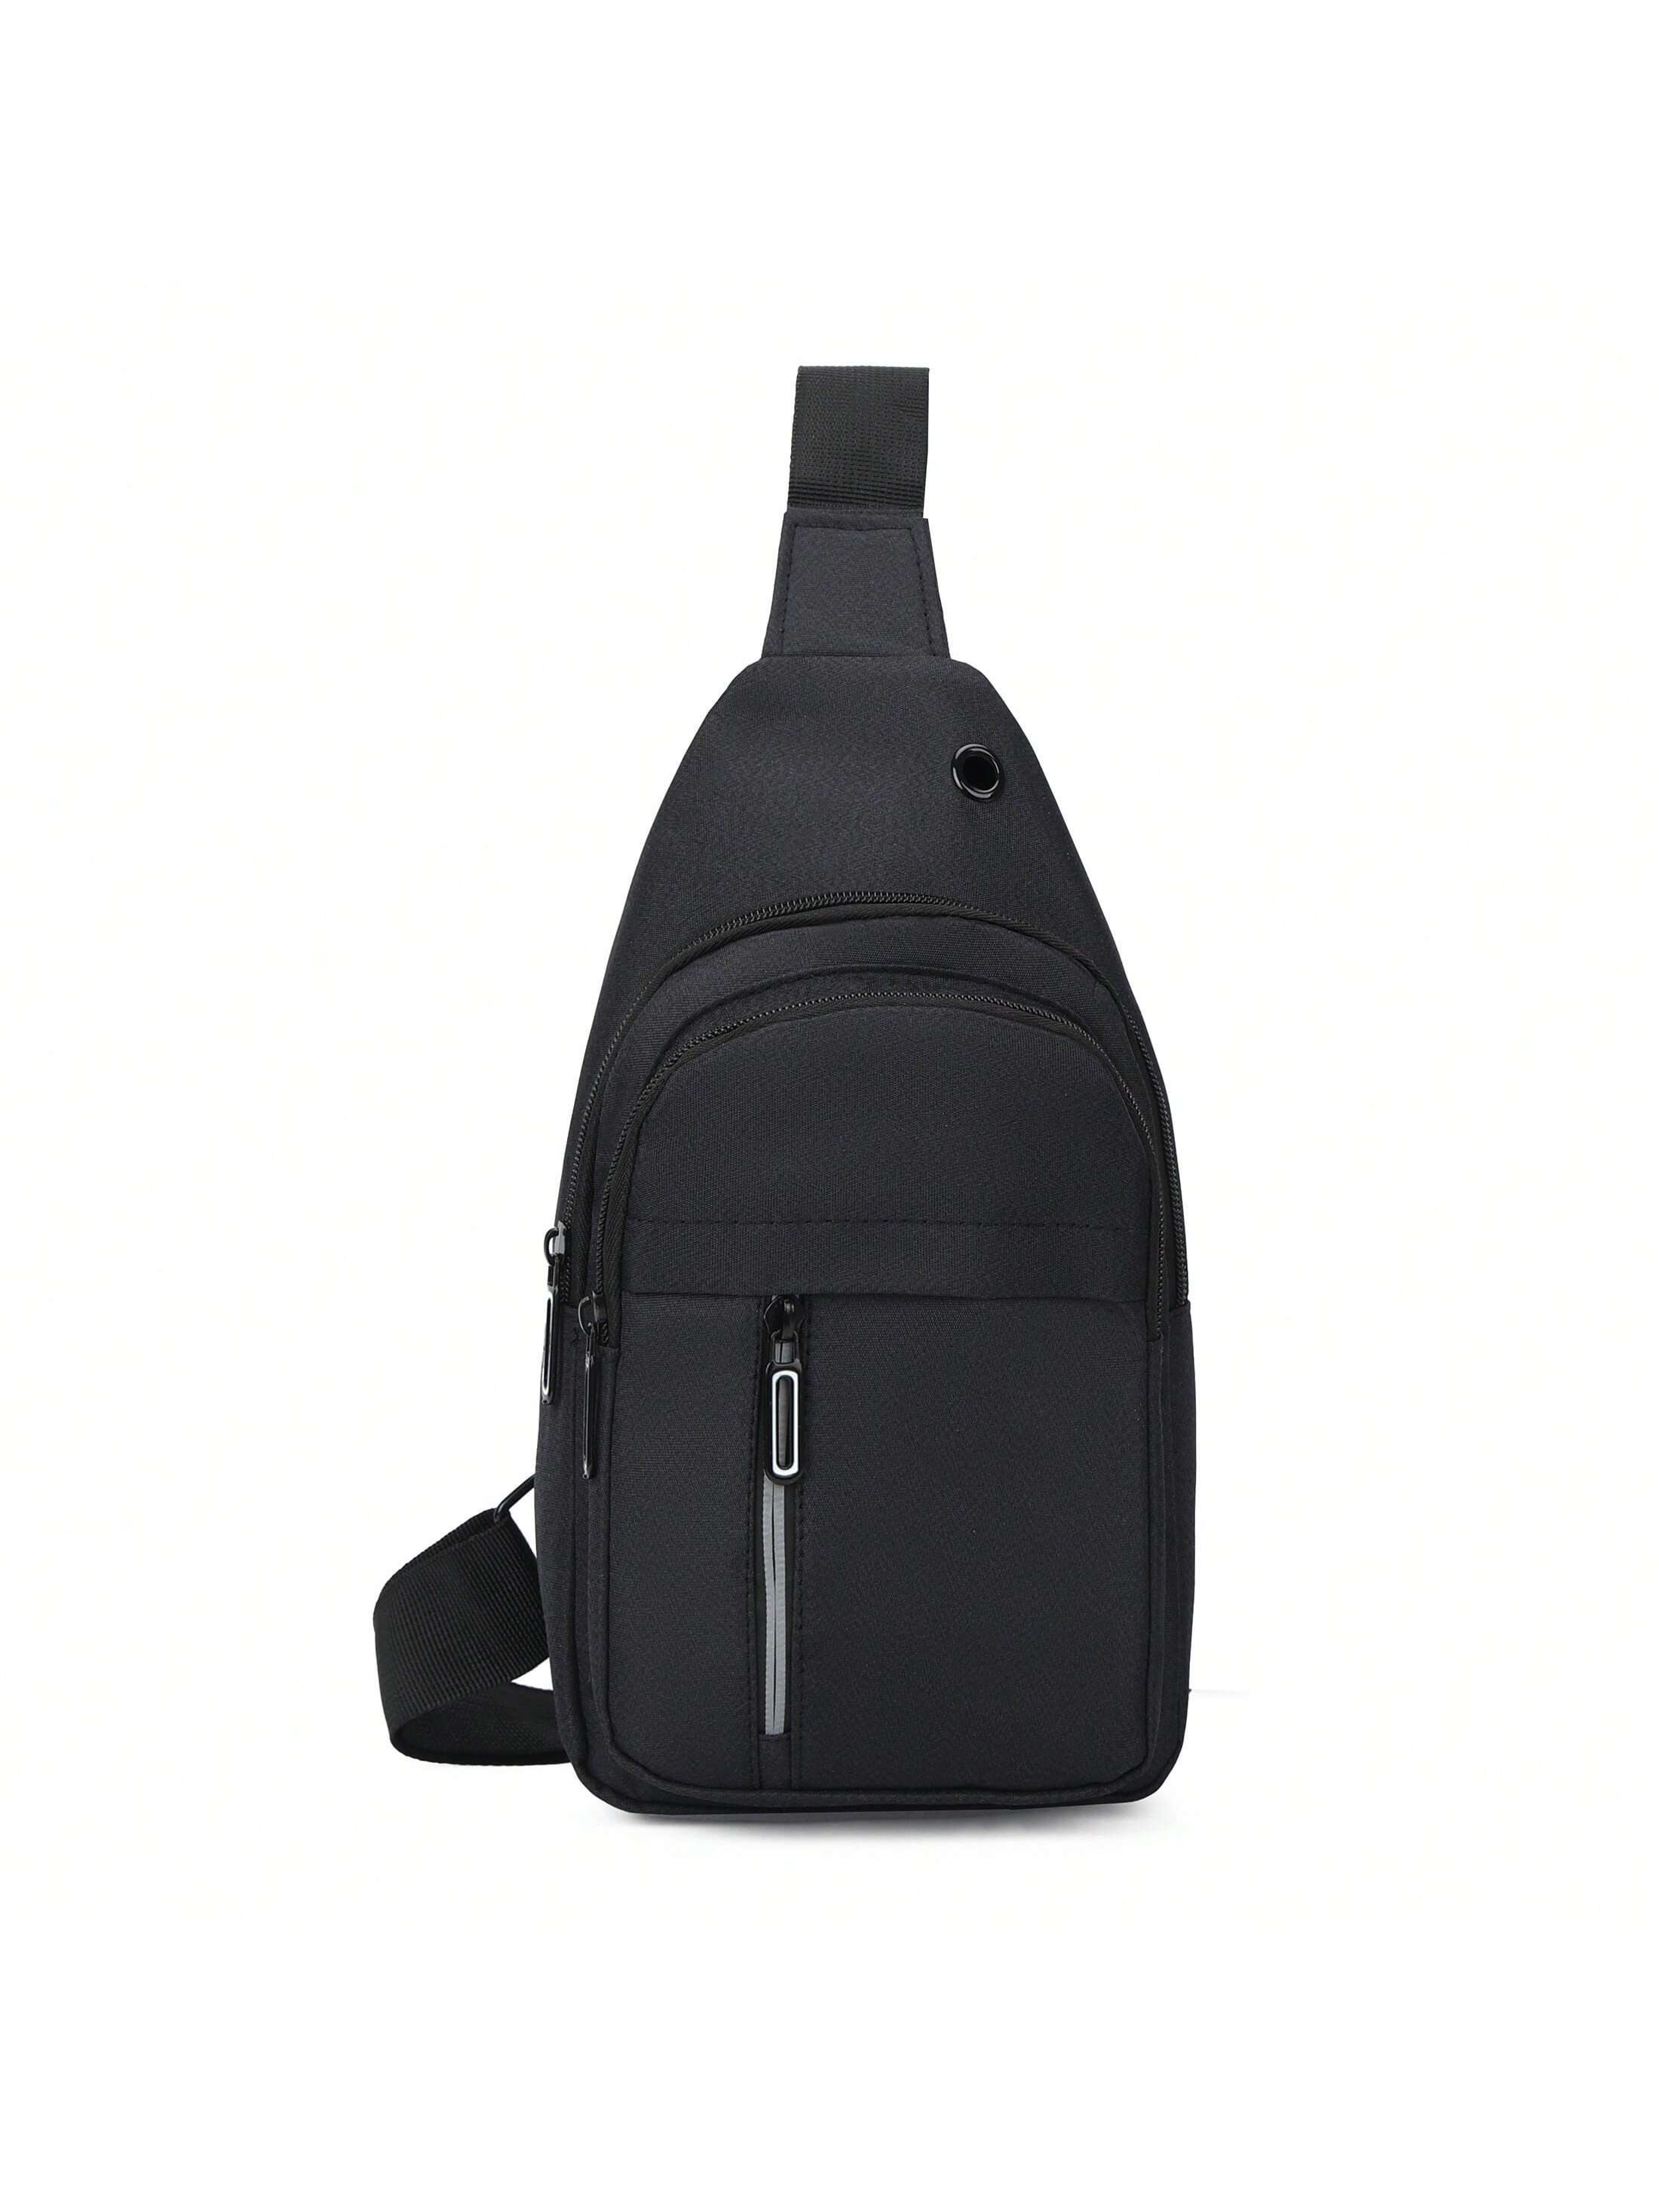 1 шт. однотонная нагрудная сумка на молнии, черный многофункциональная уличная поясная сумка тактическая подвесная сумка спортивная сумка на одно плечо для кемпинга велоспорта повседнев